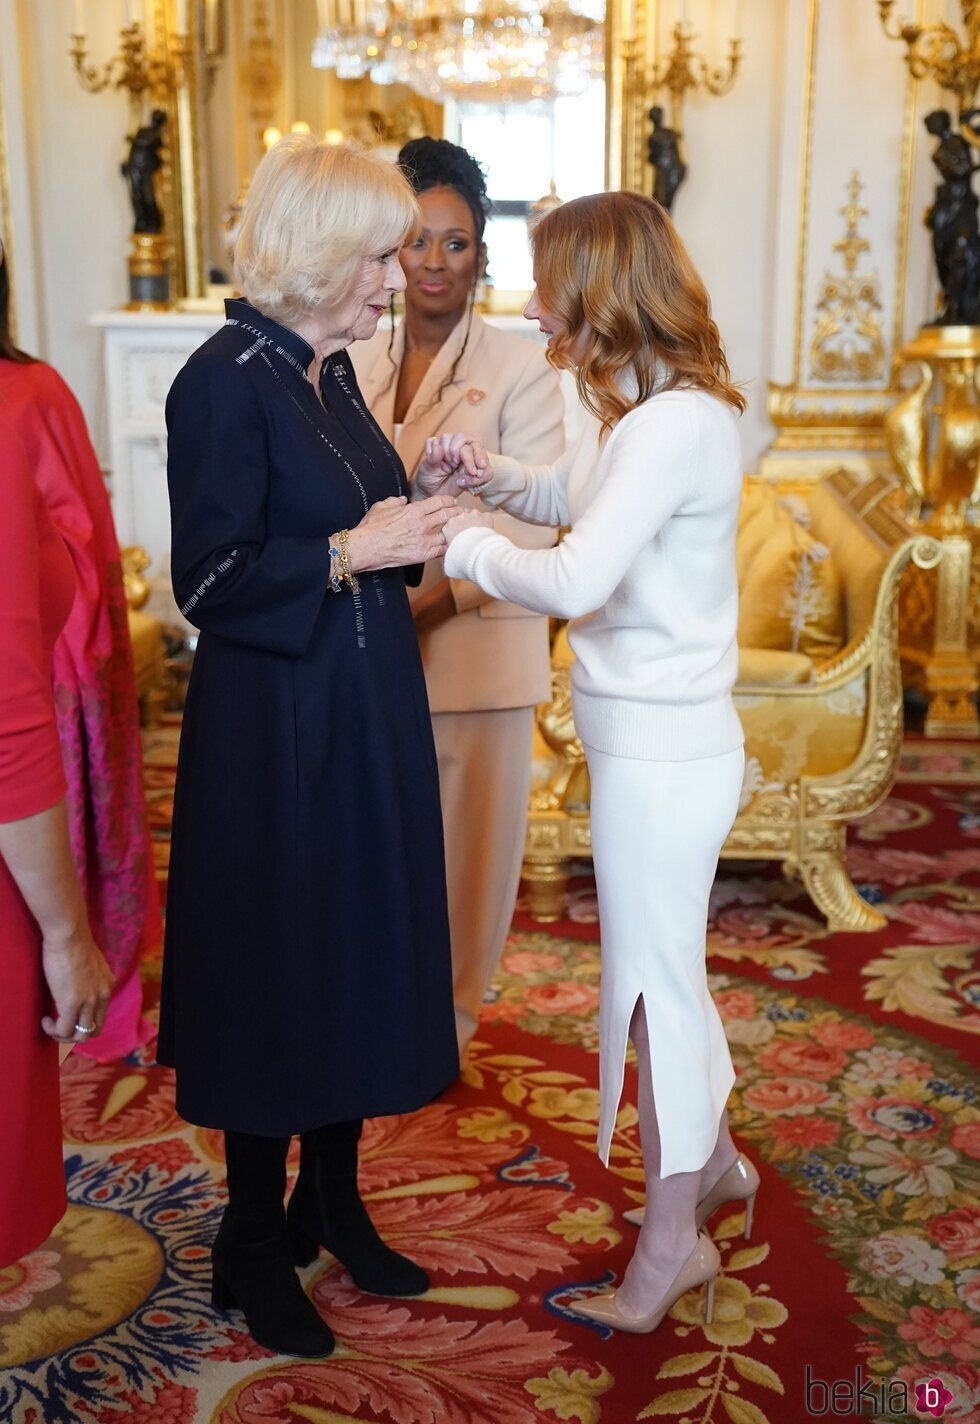 La Reina Camilla y Geri Halliwell en la recepción a los ganadores del Queen's Commonwealth Essay Competition